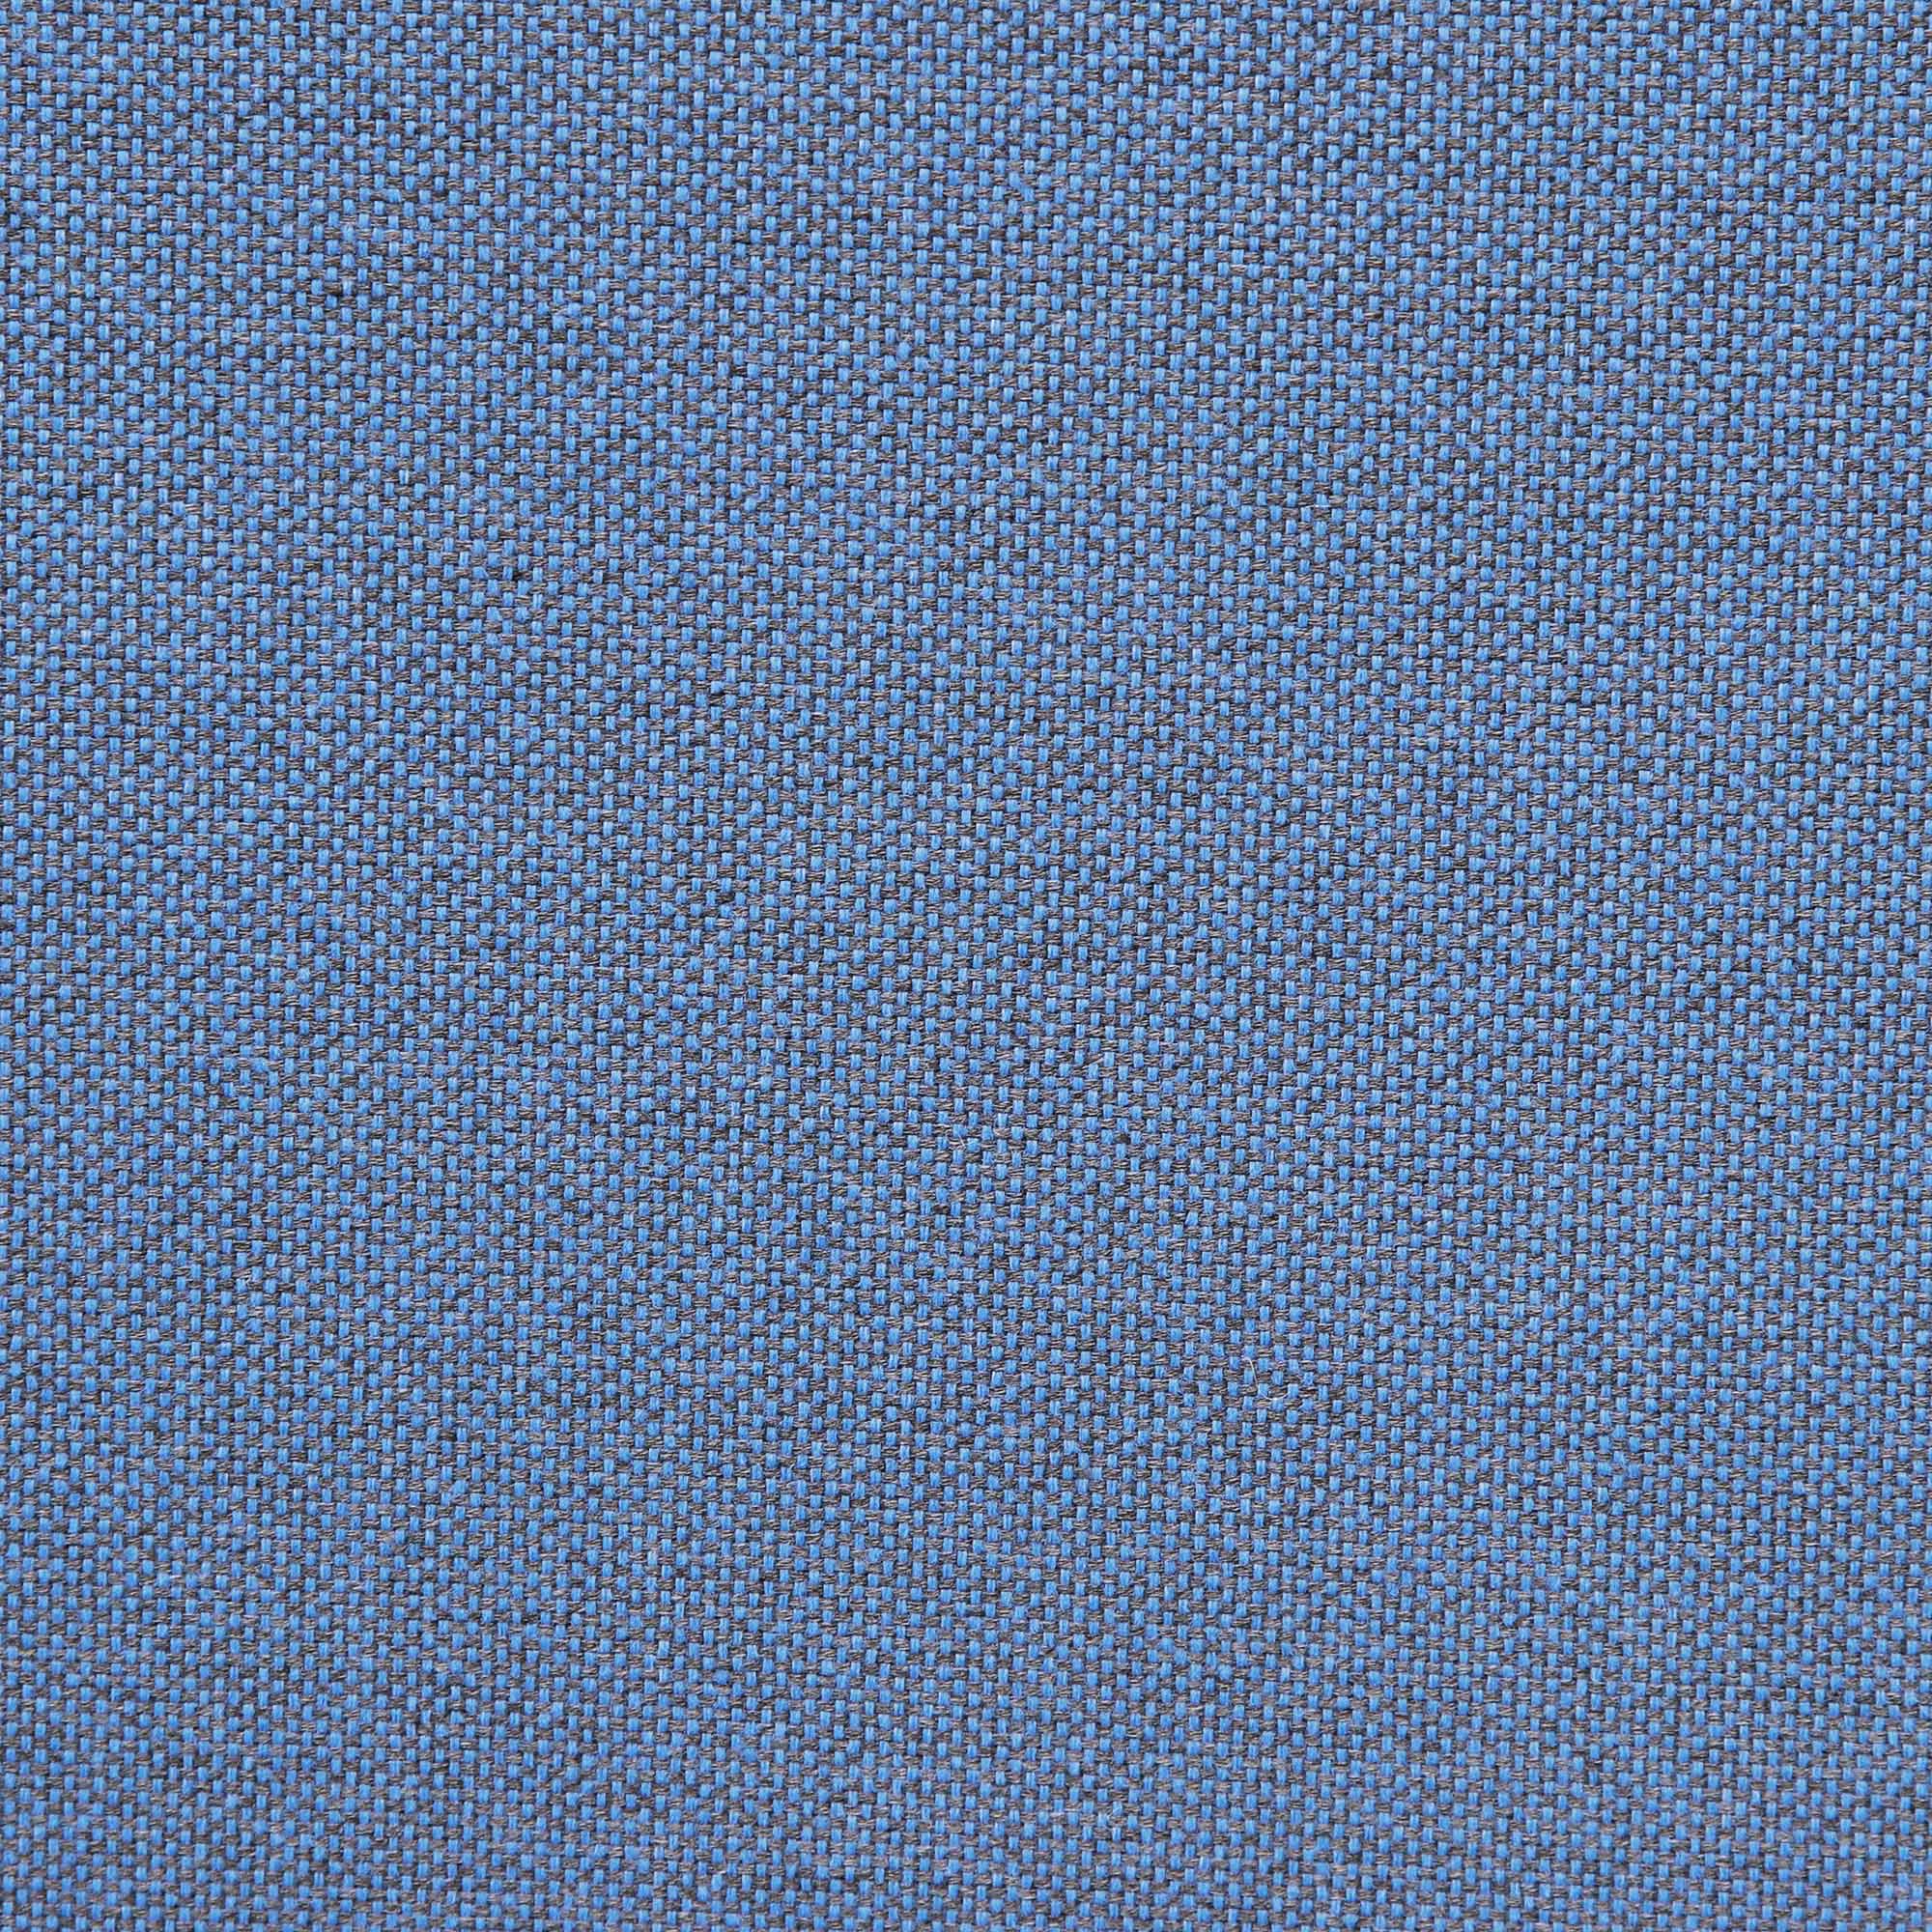 Комплект садовой мебели LF бежевый с синим из 4 предметов, цвет серо-бежевый, размер 173х62 - фото 10